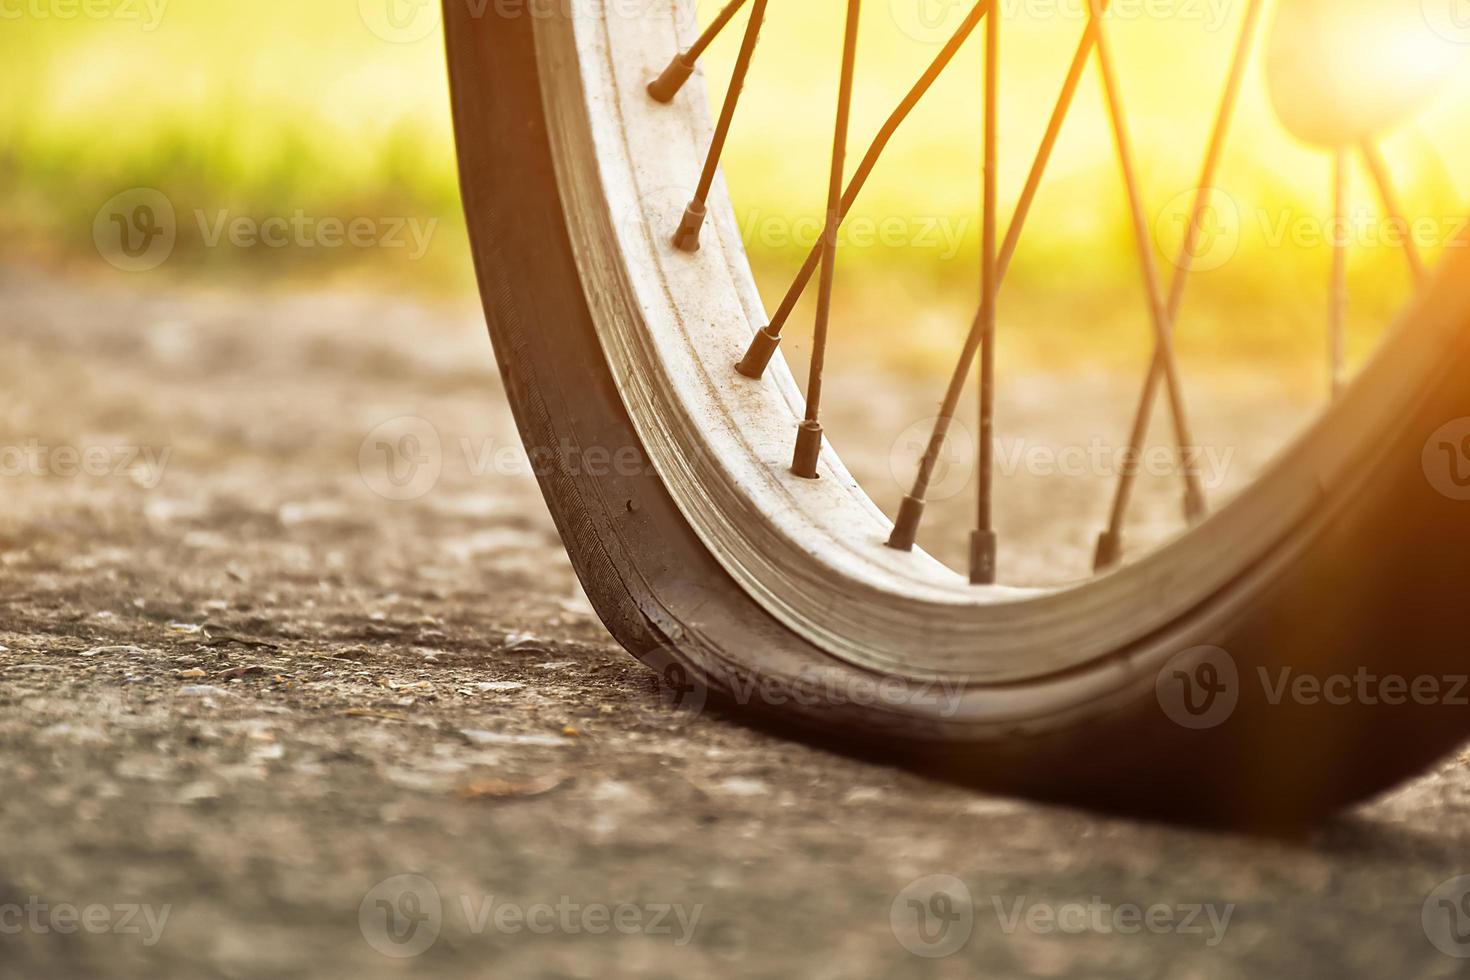 close-up vista da bicicleta que tem pneu furado e estacionado na calçada, fundo desfocado. foco suave e seletivo no pneu. foto